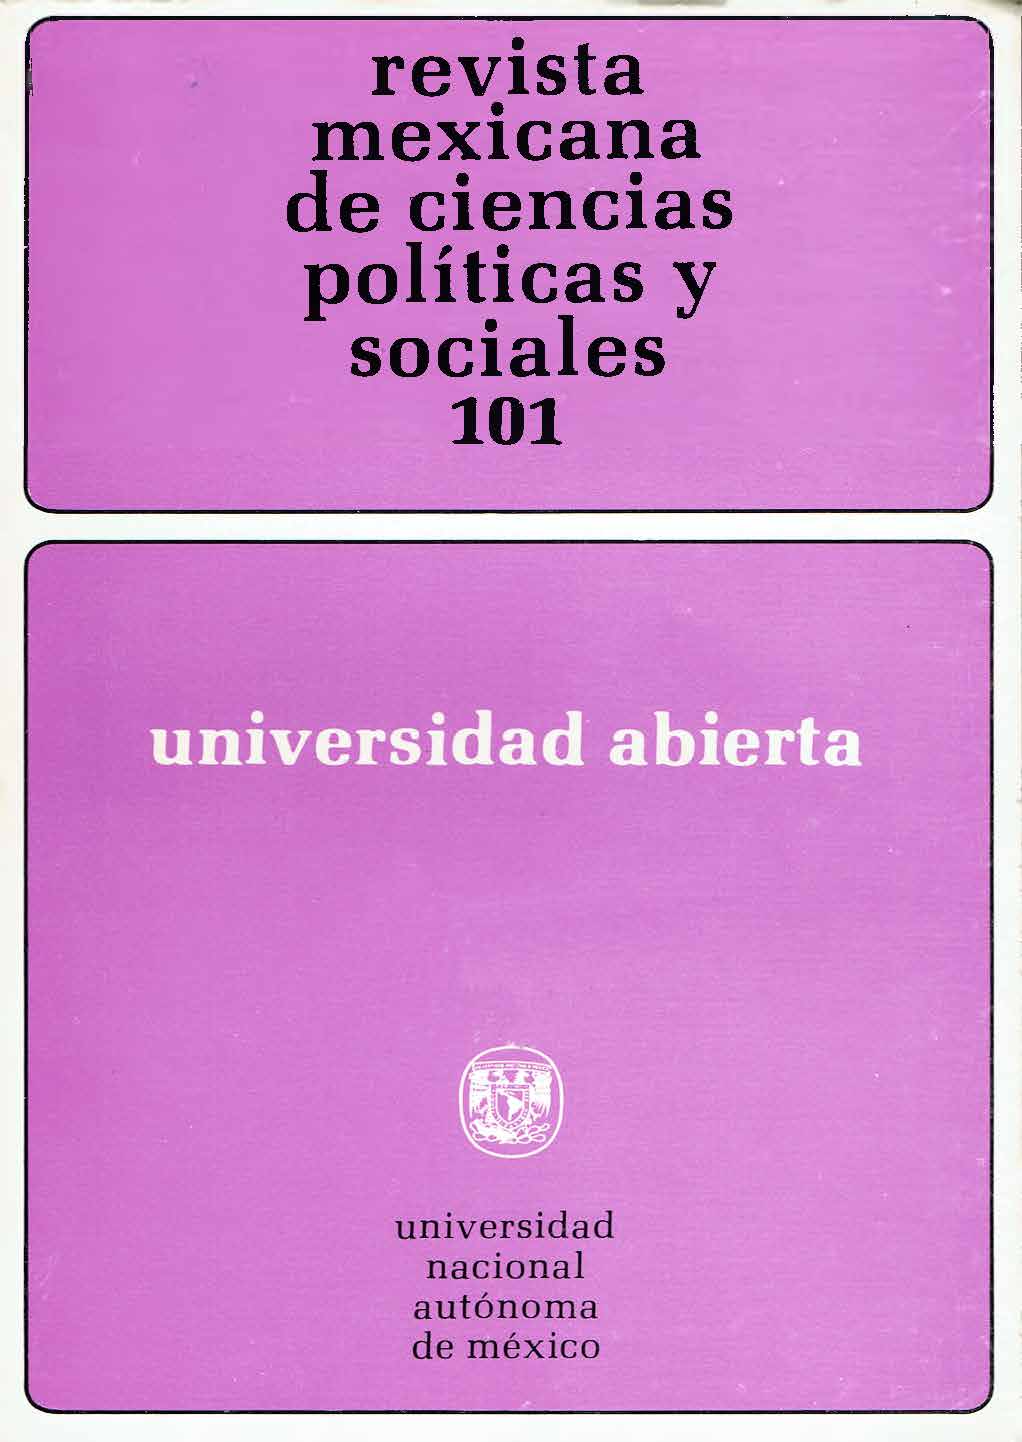 González Casanova Pablo, Imperialismo y liberación en América Latina, México, Siglo XXI, 1978.